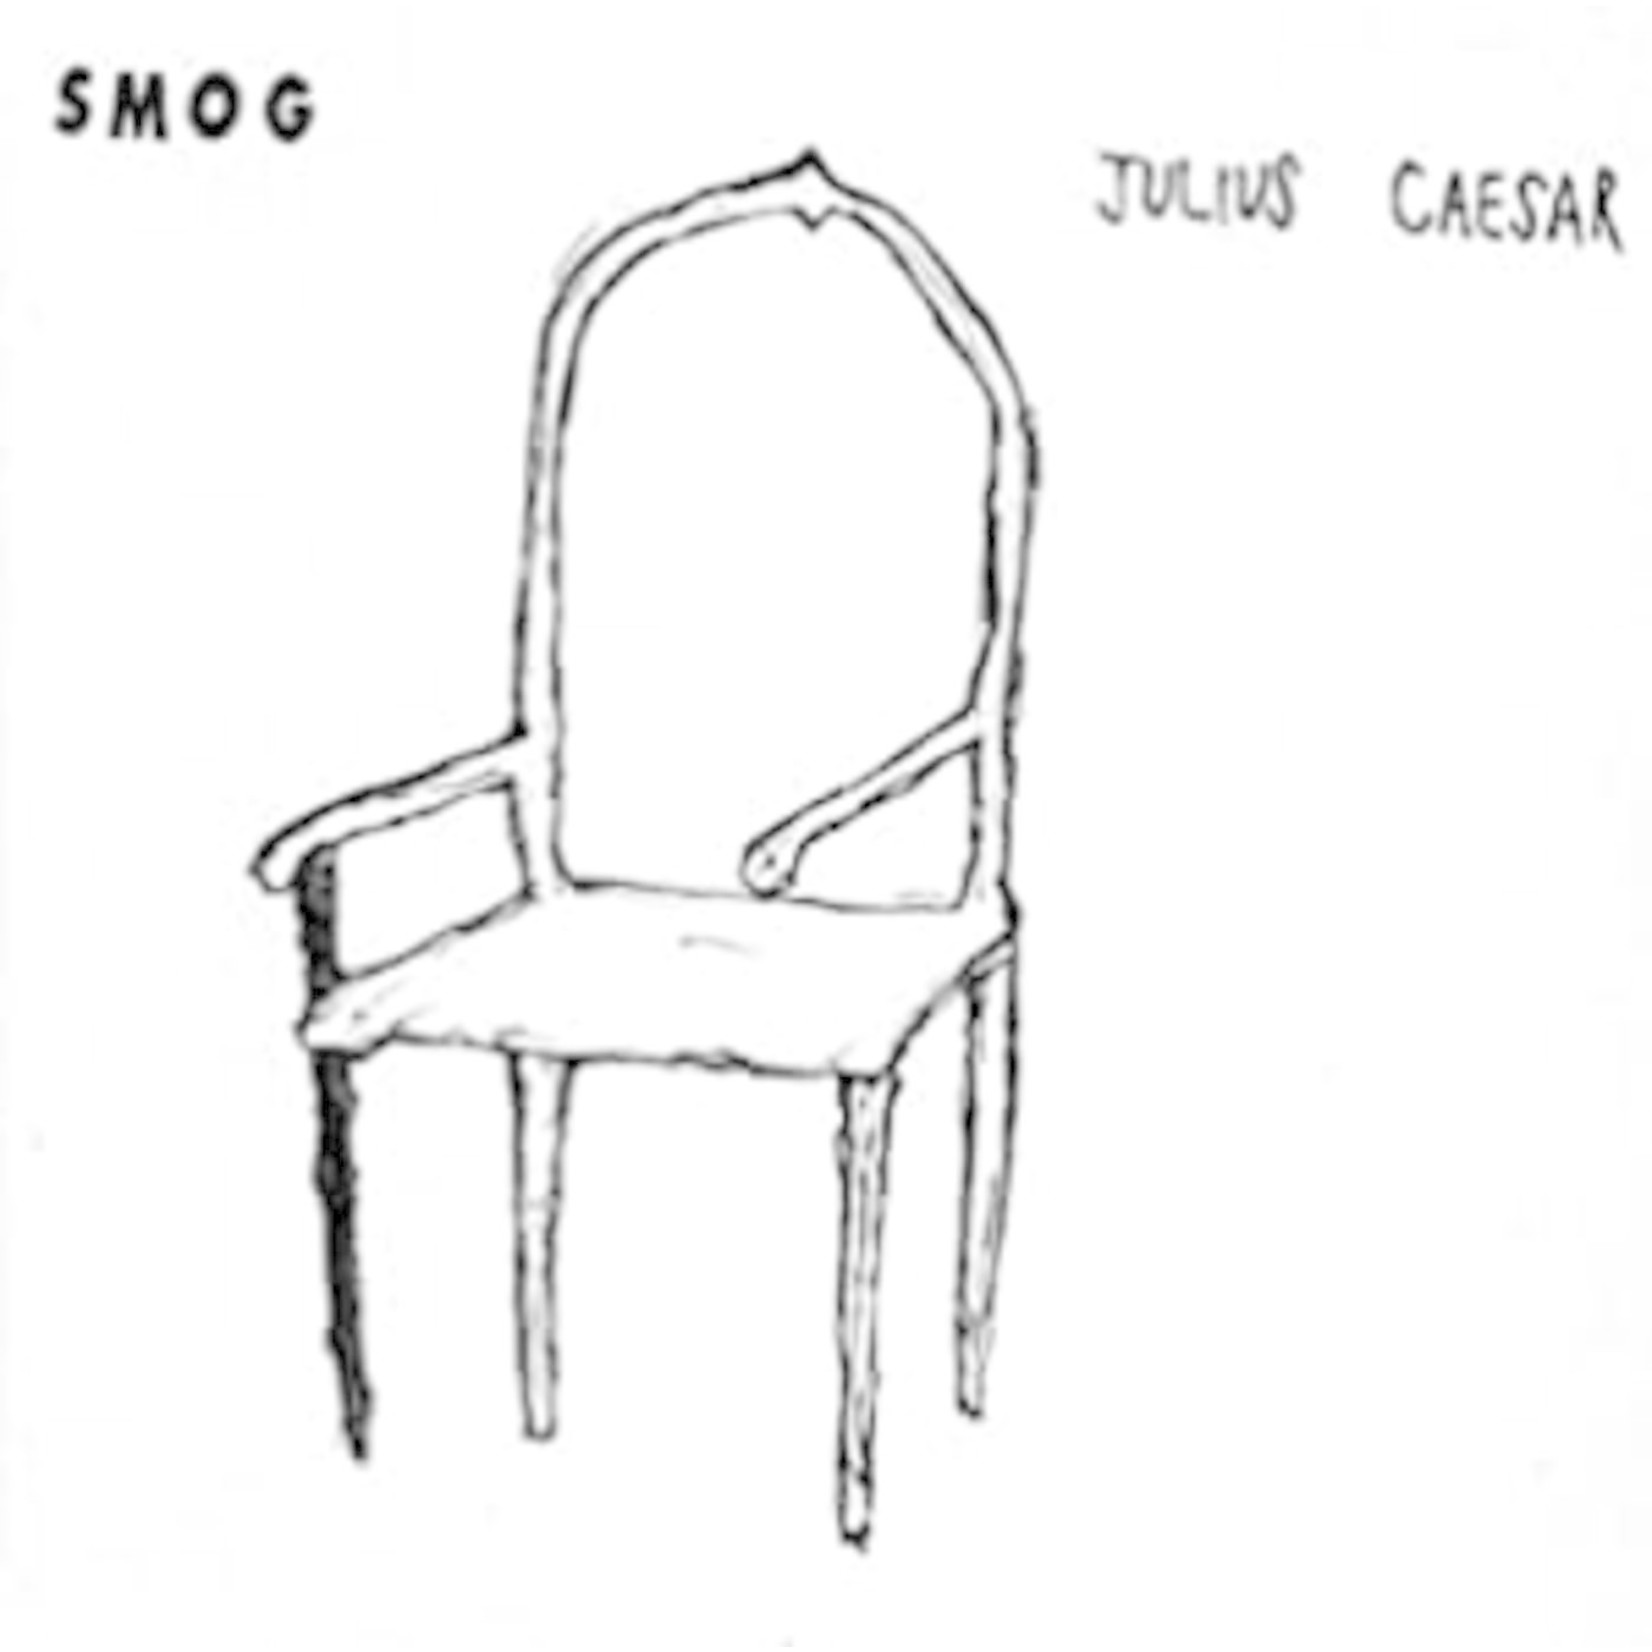 Drag City Smog - Julius Caesar (LP)